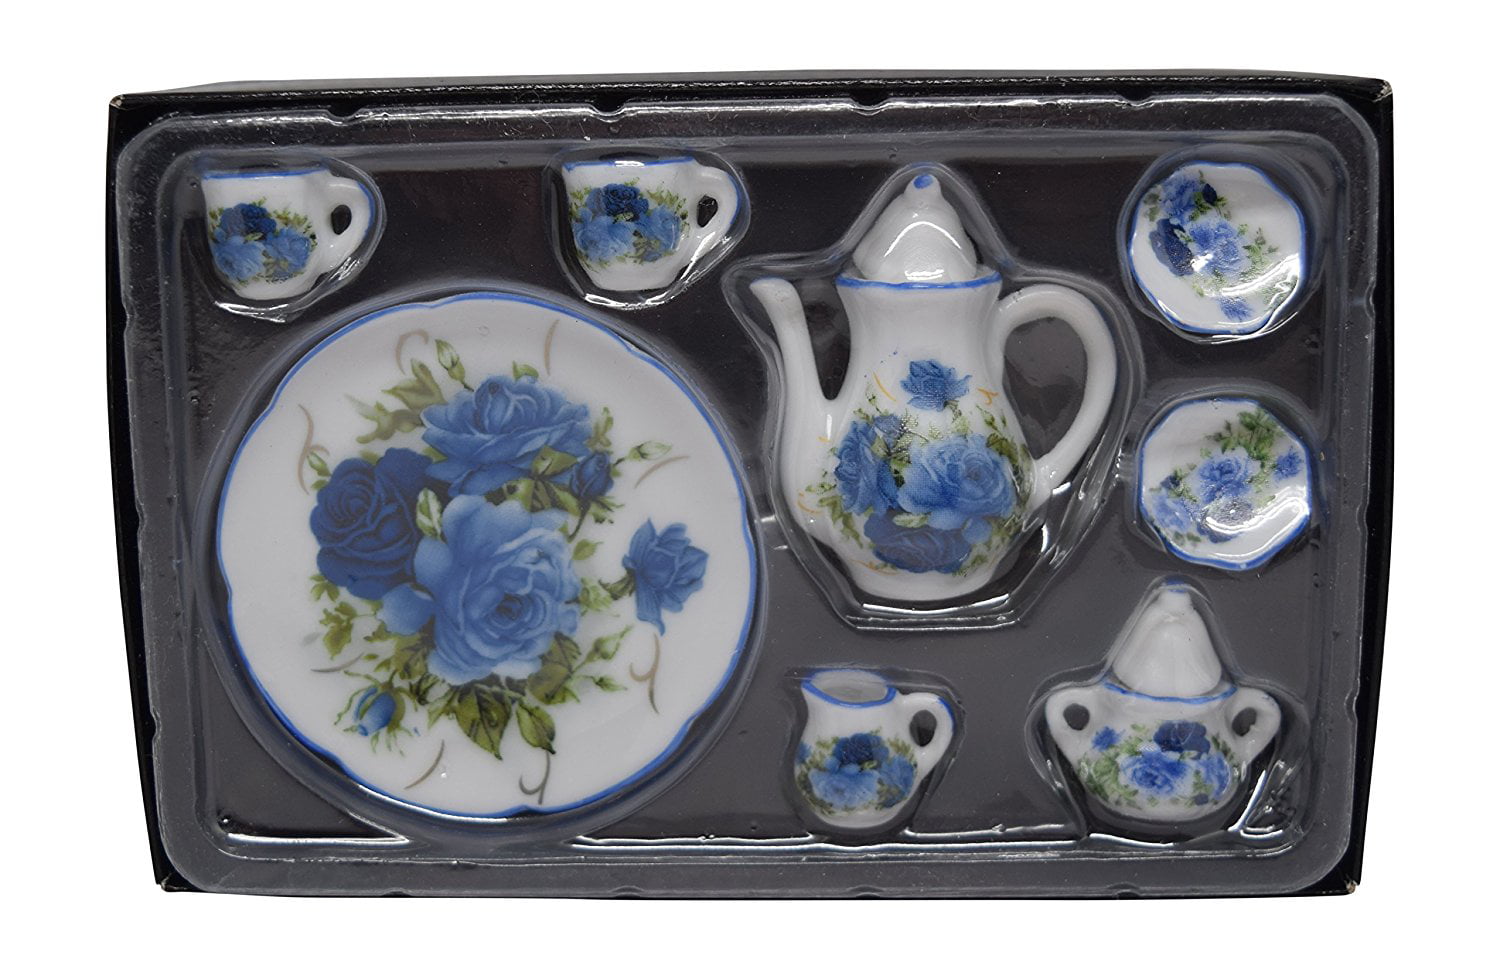 16 Scale 10 Piece Mini Dollhouse Size Blue Floral Tea Set with Teapot Sugar 